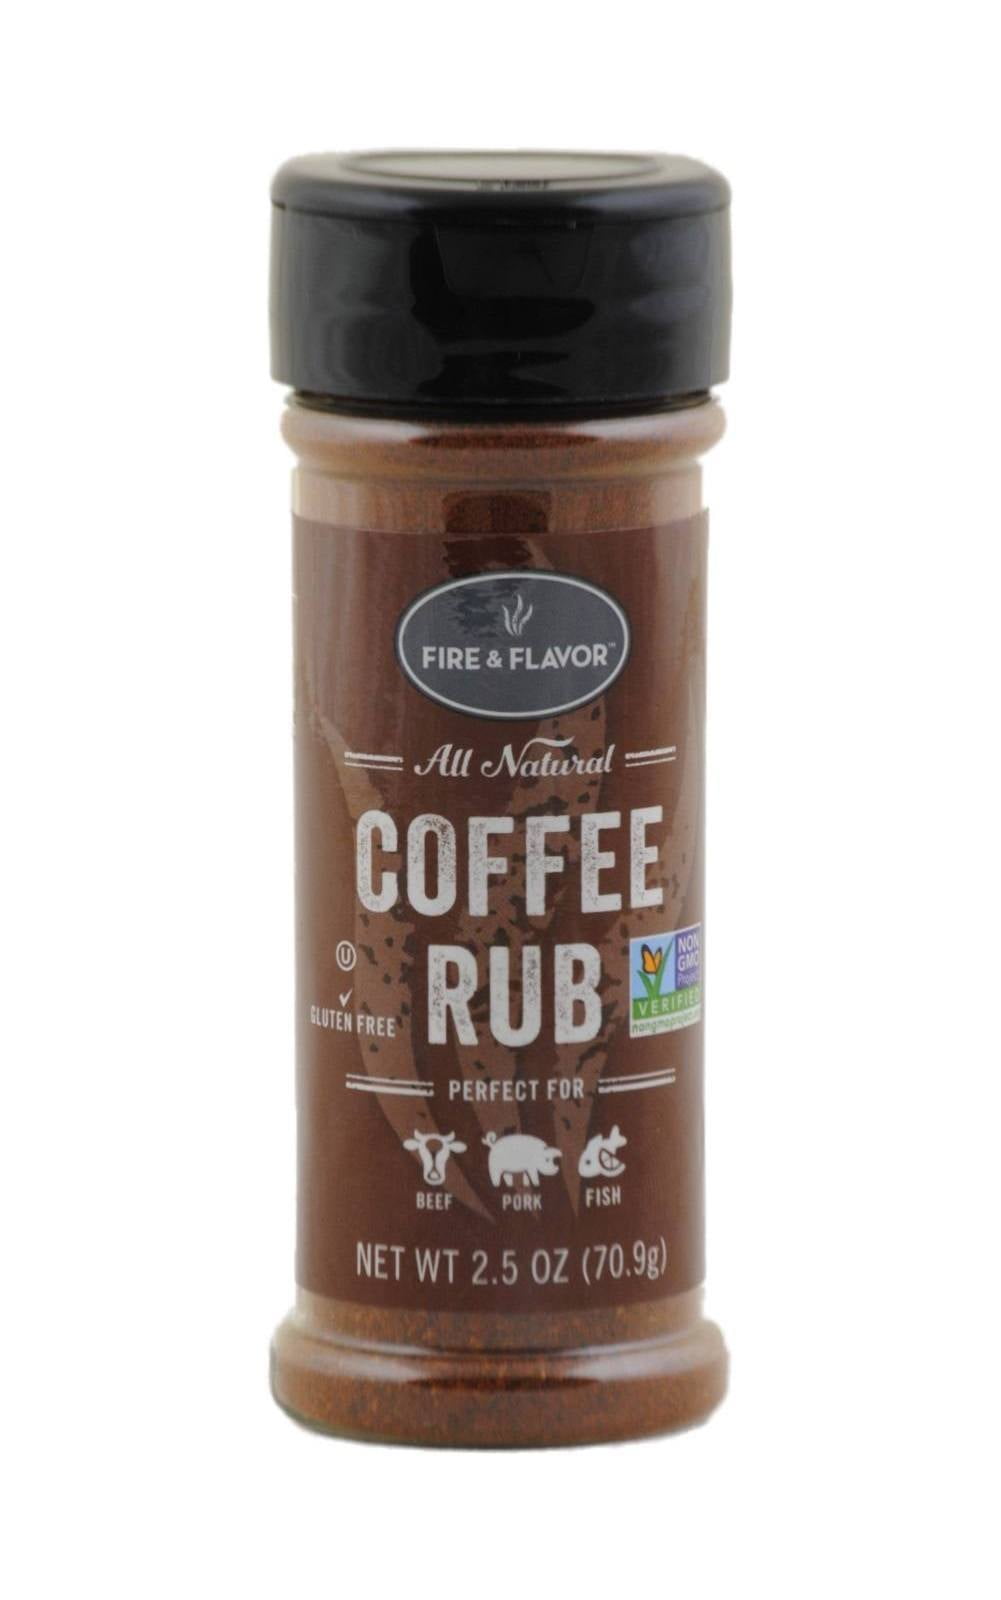 Fire & Flavor All Natural Coffee Rub, 9oz, Brown